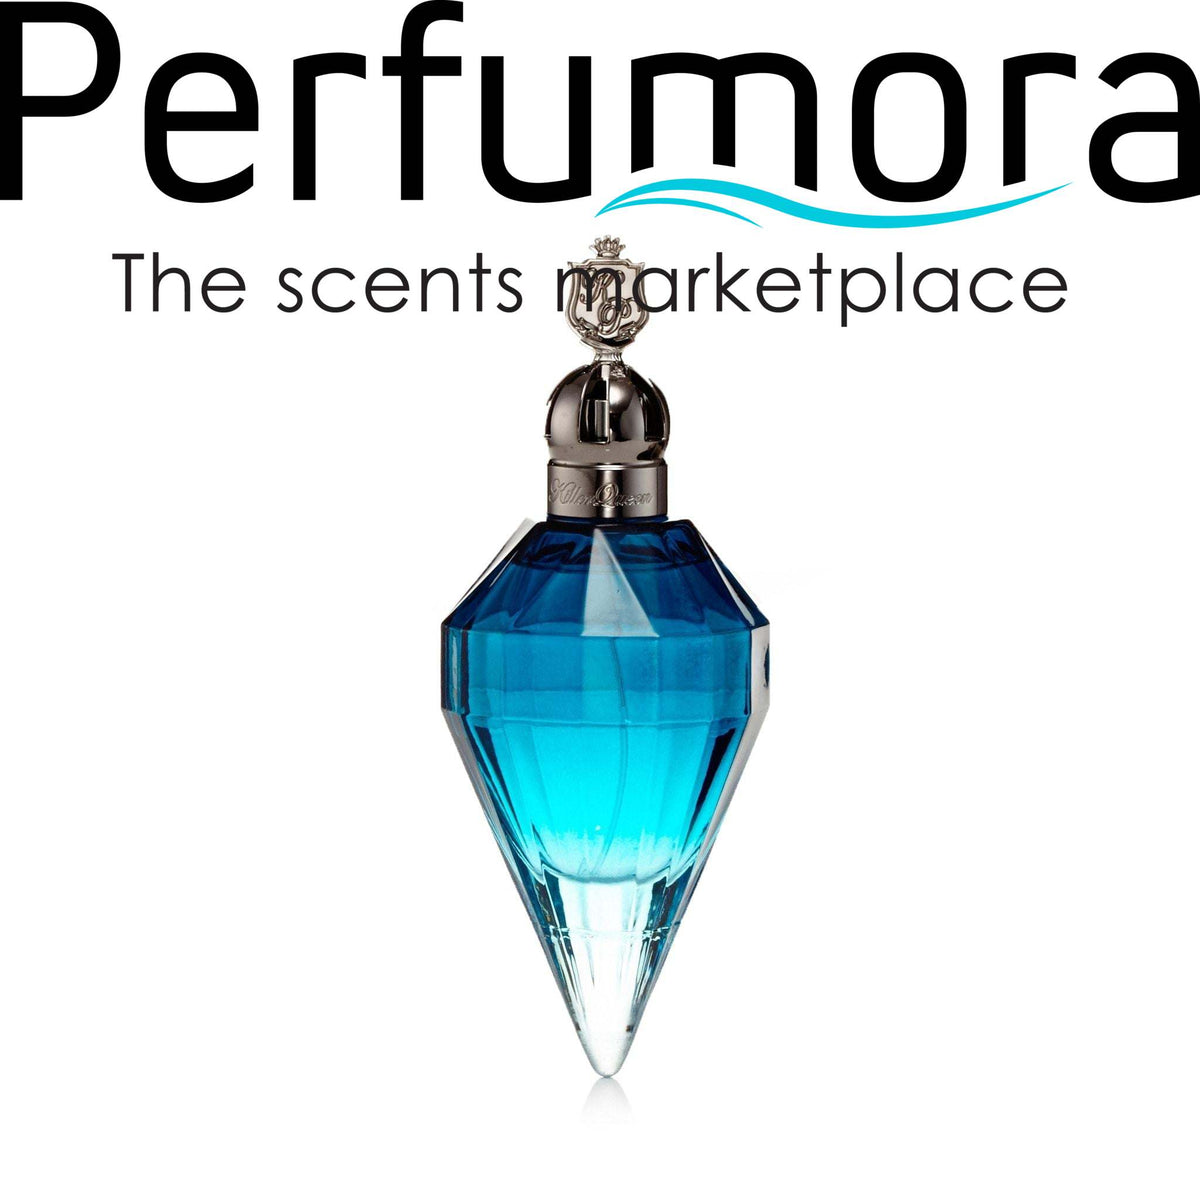 Katy Perry Royal Revolution Eau de Parfum Womens Spray 3.4 oz. 